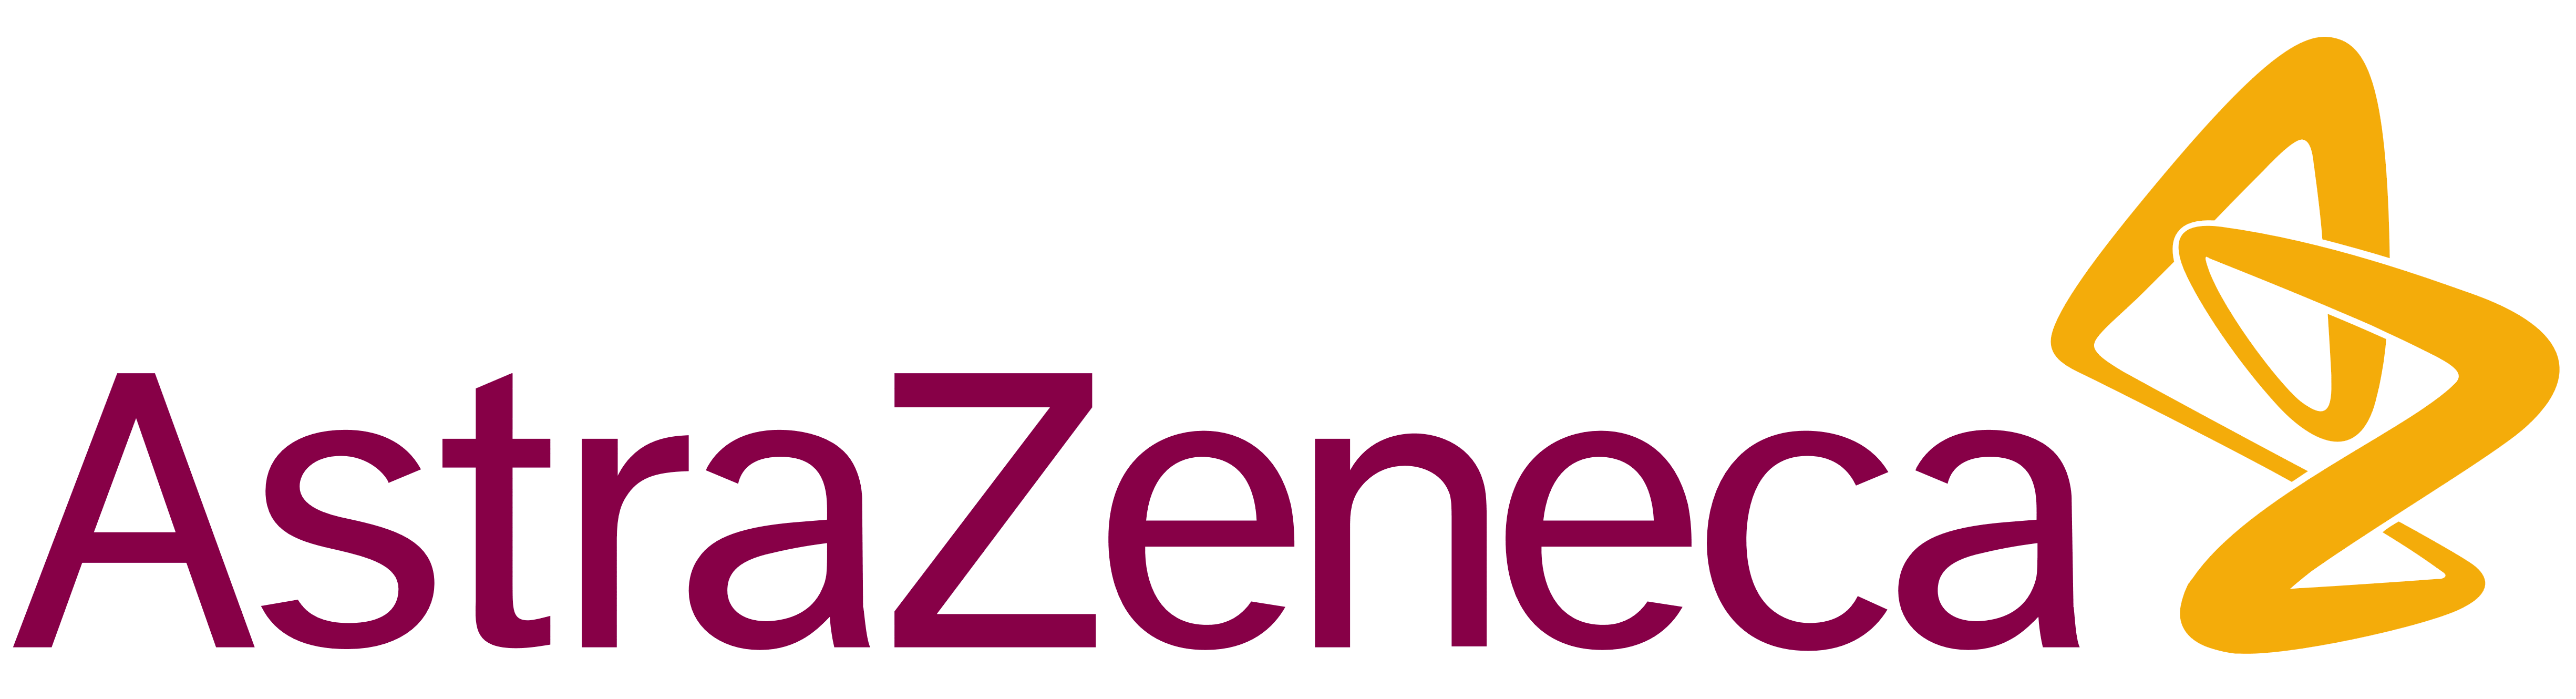 Sponsor logo - AstraZeneca.png